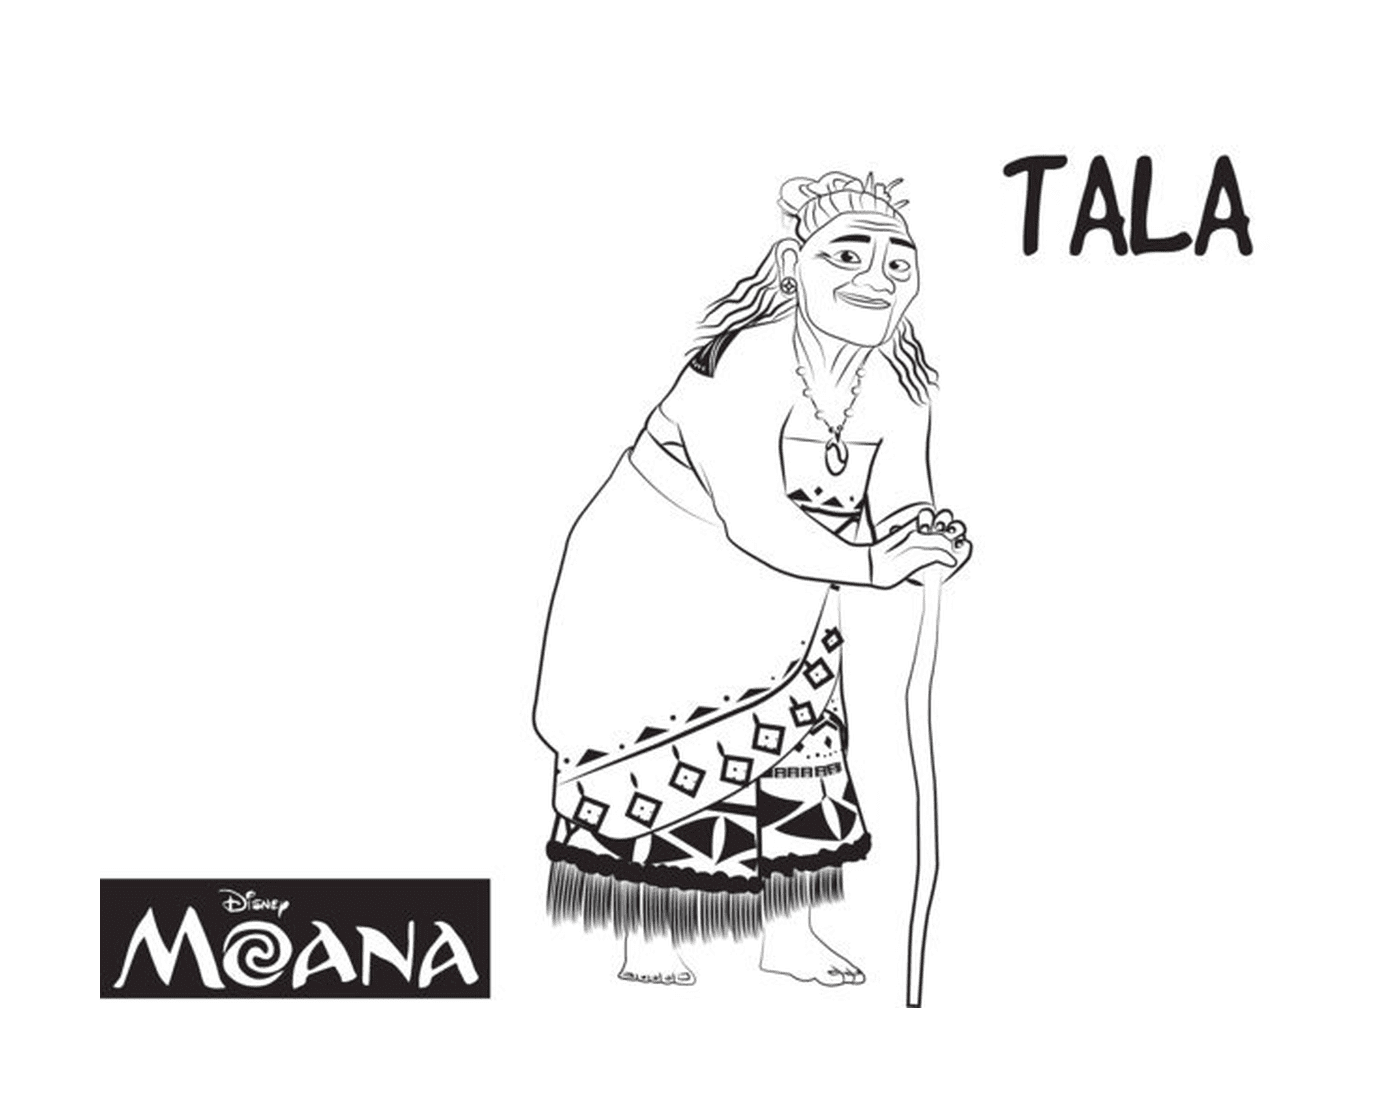  Tala, guardián espiritual de Moana 